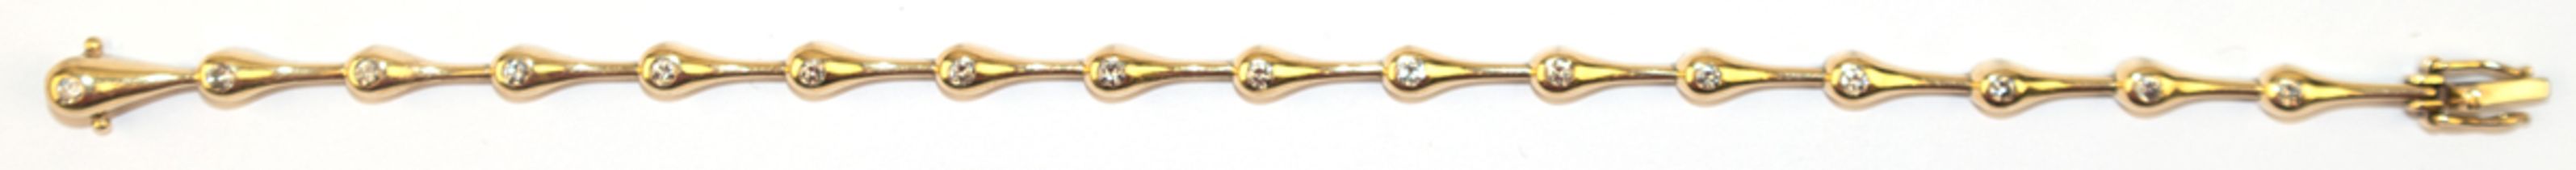 Armband, 585er GG, 16 tropfenförmige Glieder je mit 1 Brillanten von zus. ca. 0,40 ct. besetzt, Fed